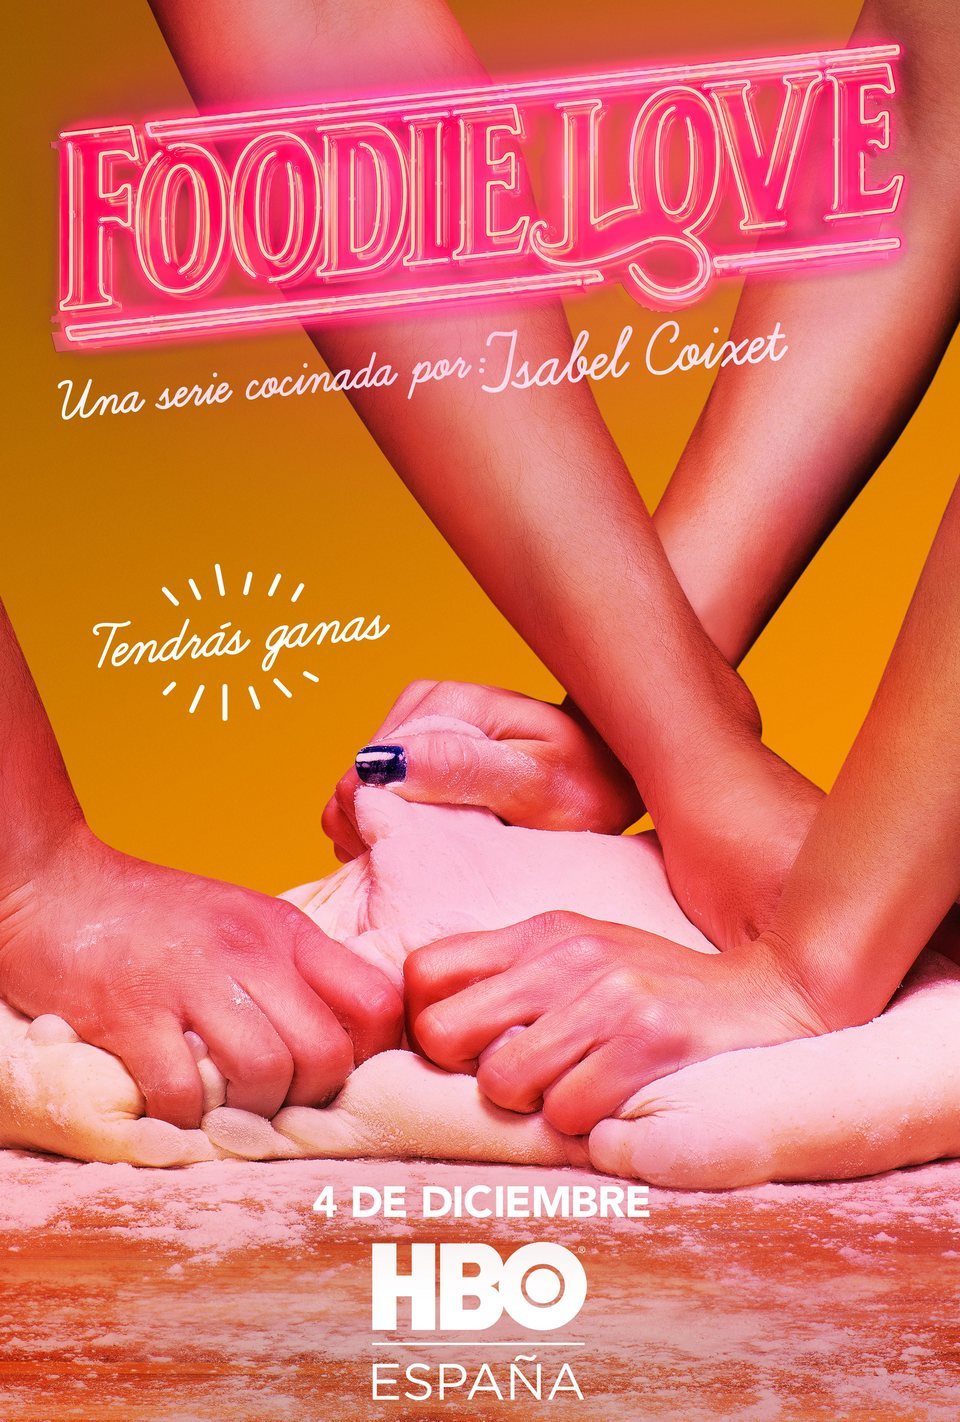 Poster of Foodie Love - Foodie Love #2